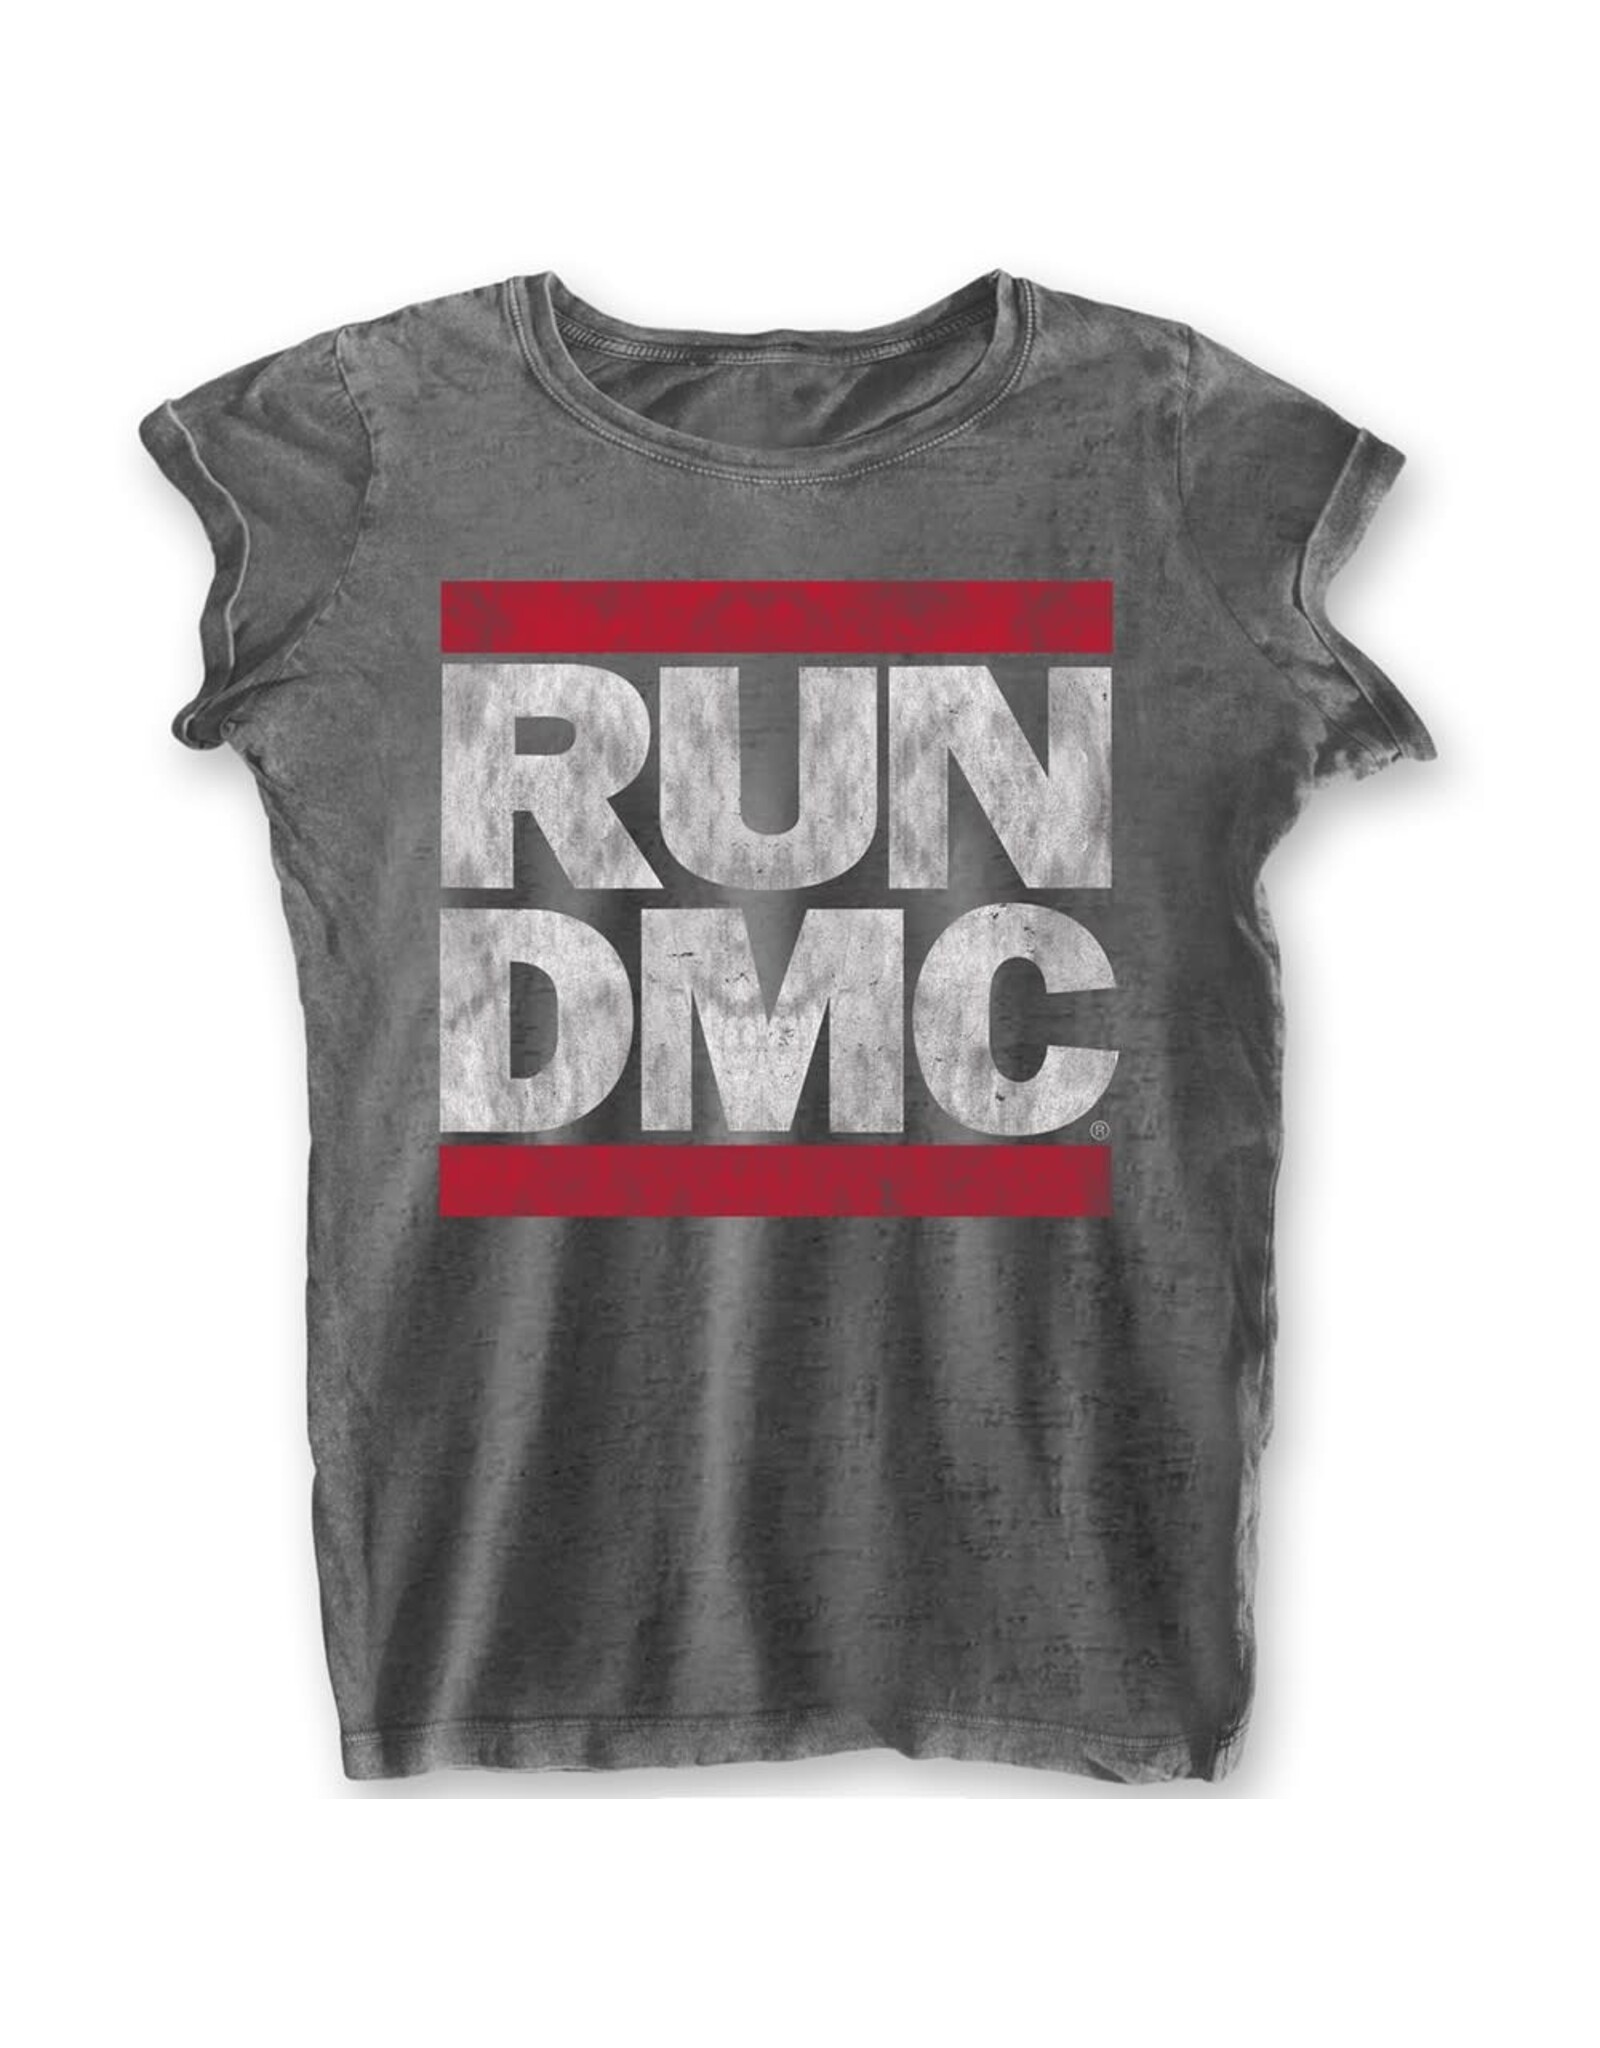 RUN D.M.C. - Classic Logo Women's Burnout T-Shirt - Pop Music